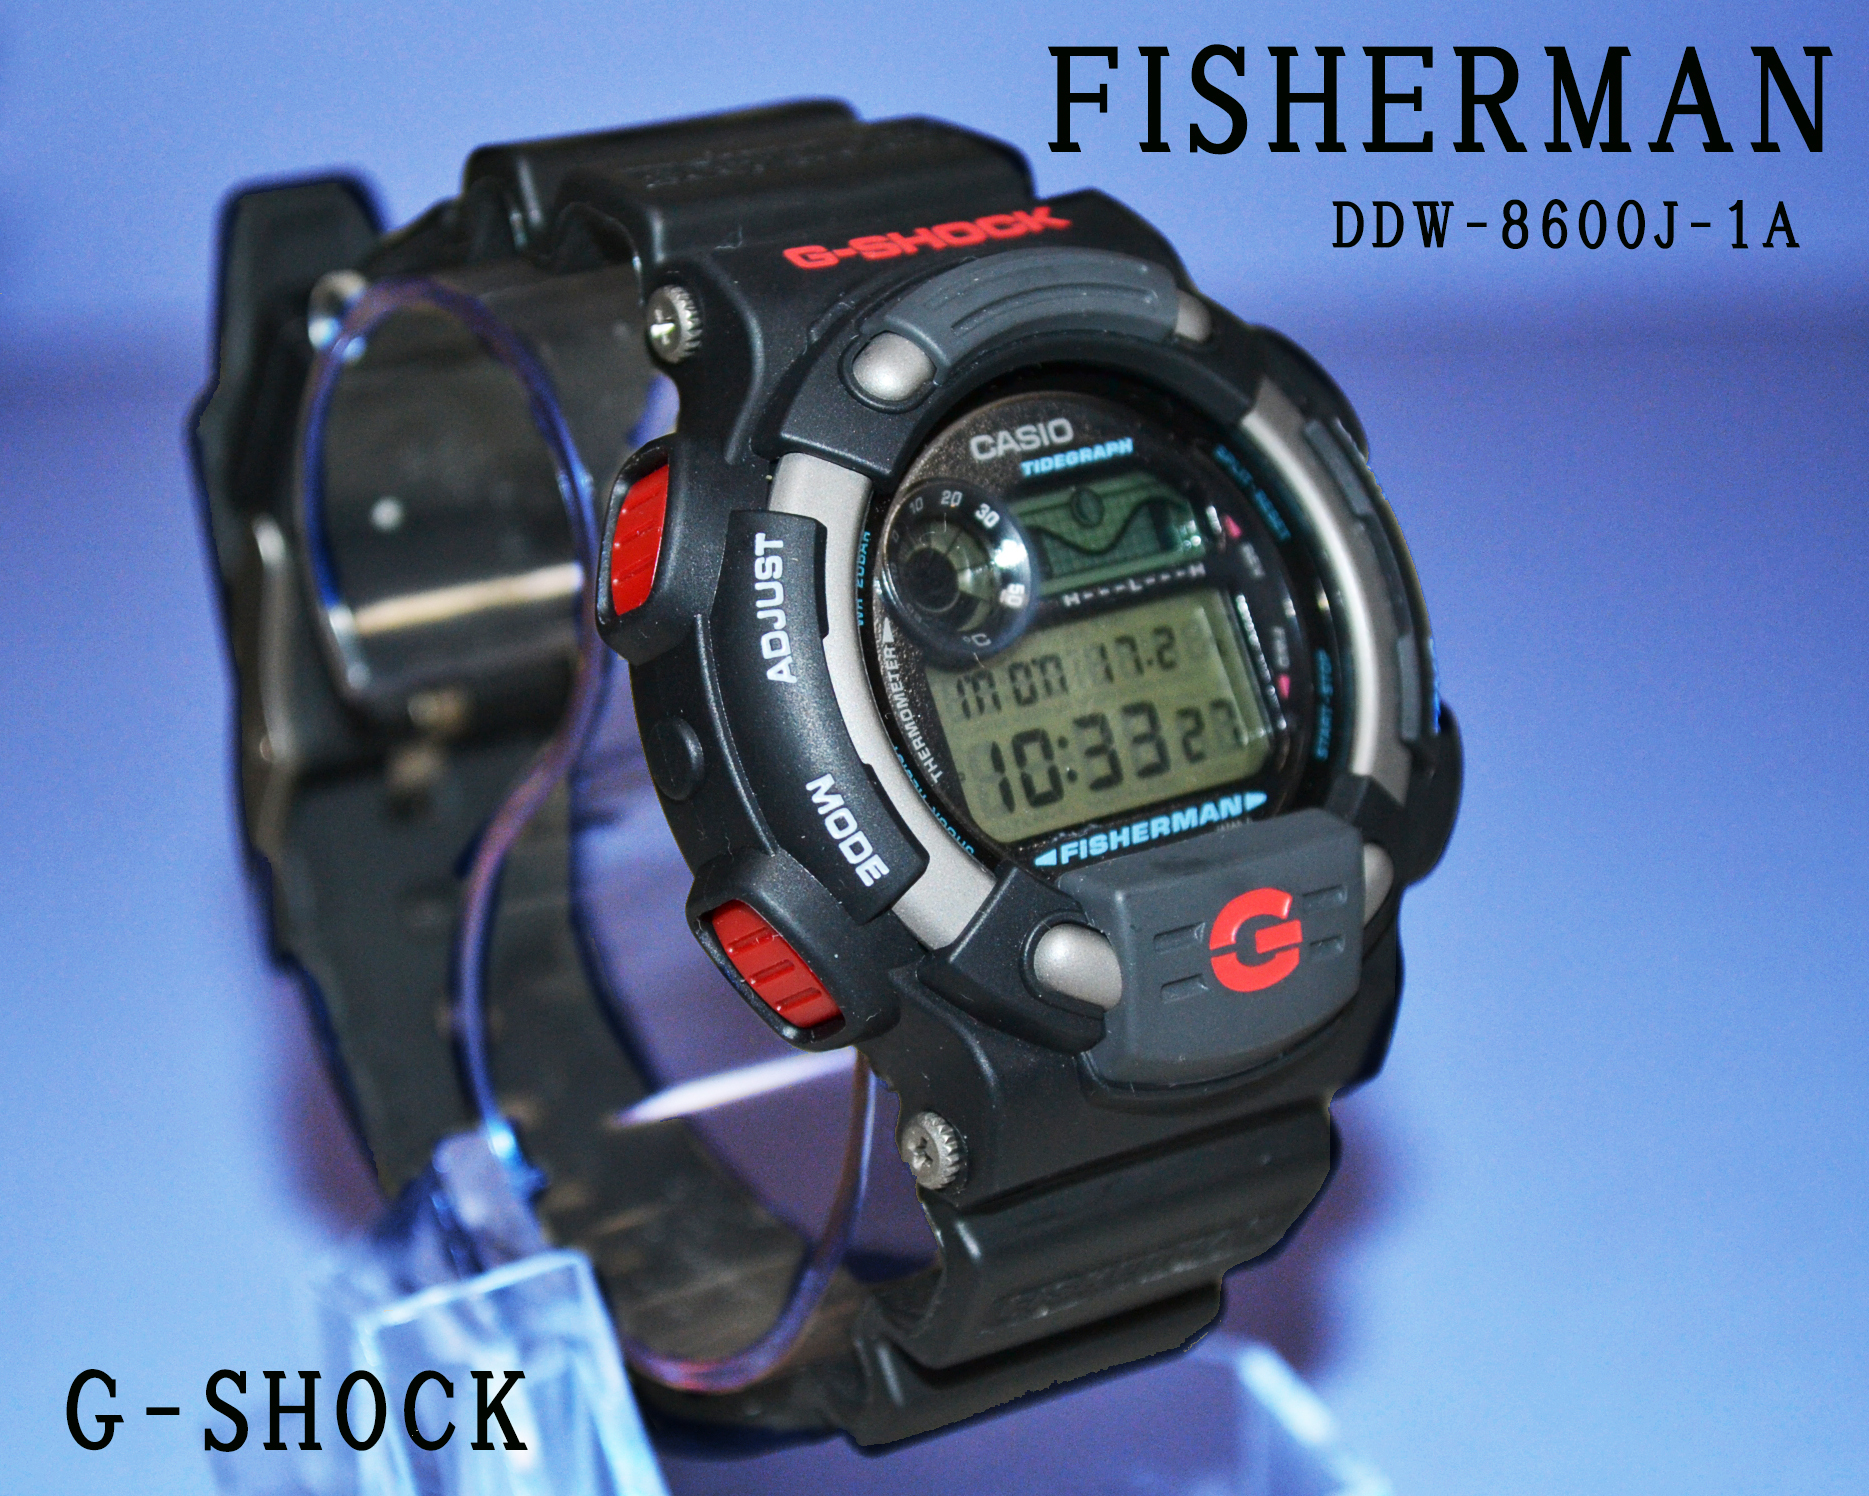 年末セール品 G-SHOCK FISHERMAN DW-8600J-1A 1996 フィッシャーマン: Cochi.ka.ka （東風かか ）